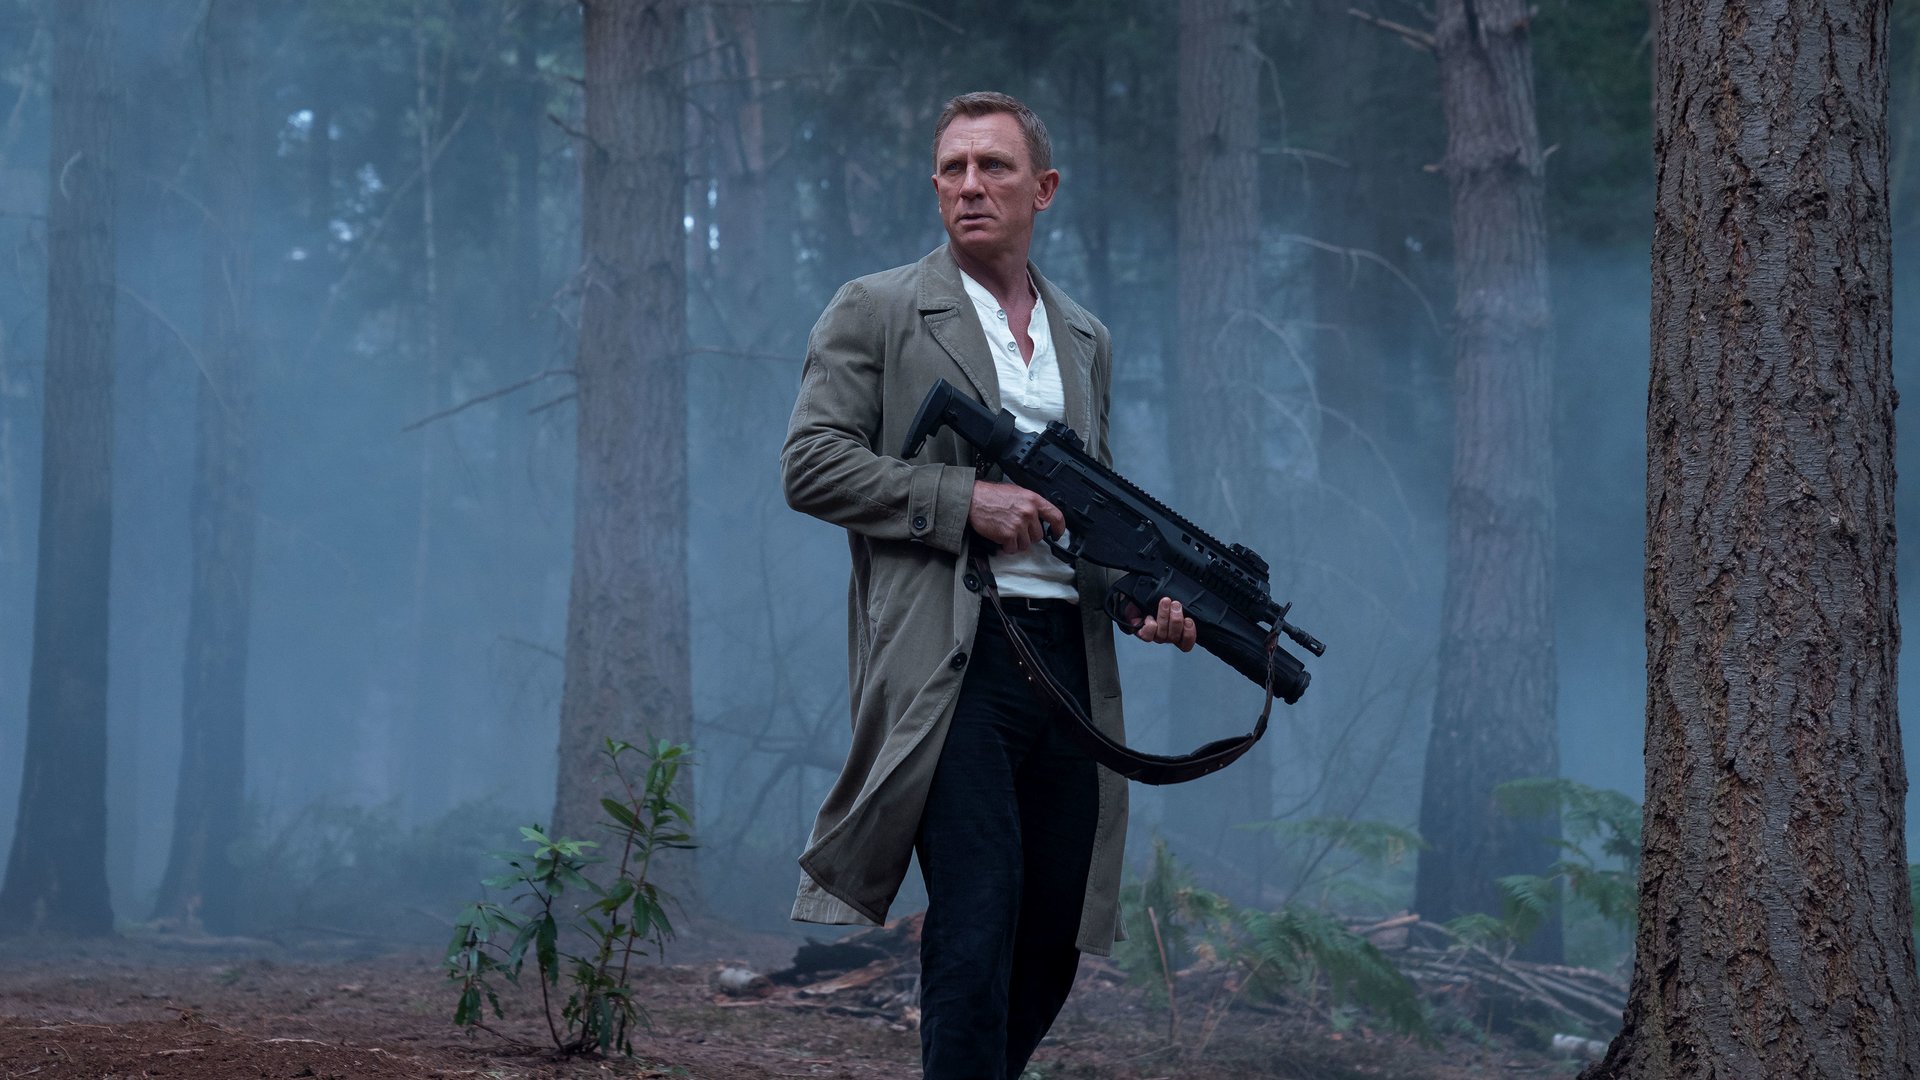 #„Niemand ist im Rennen“: Nächster 007-Actionfilm mit James Bond soll noch Jahre entfernt sein